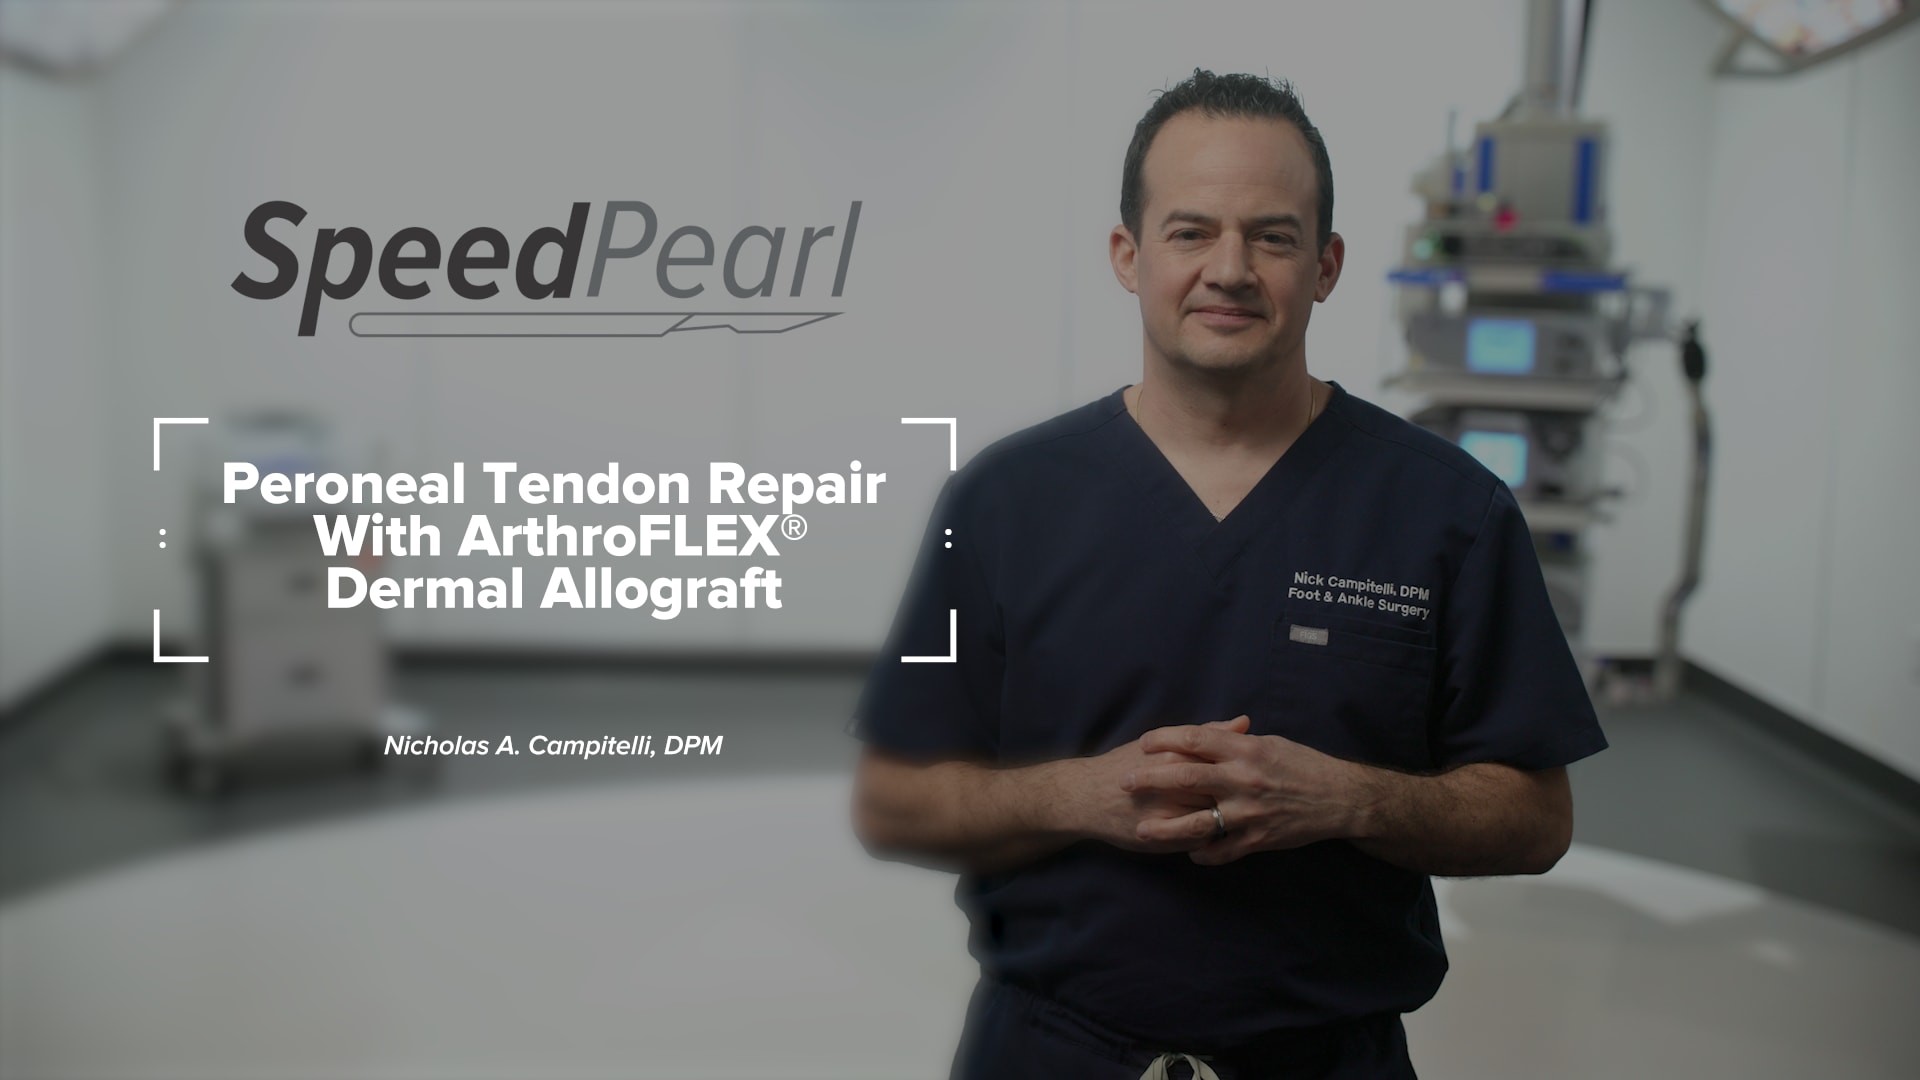 Peroneal Tendon Repair Using ArthroFLEX® Dermal Allograft